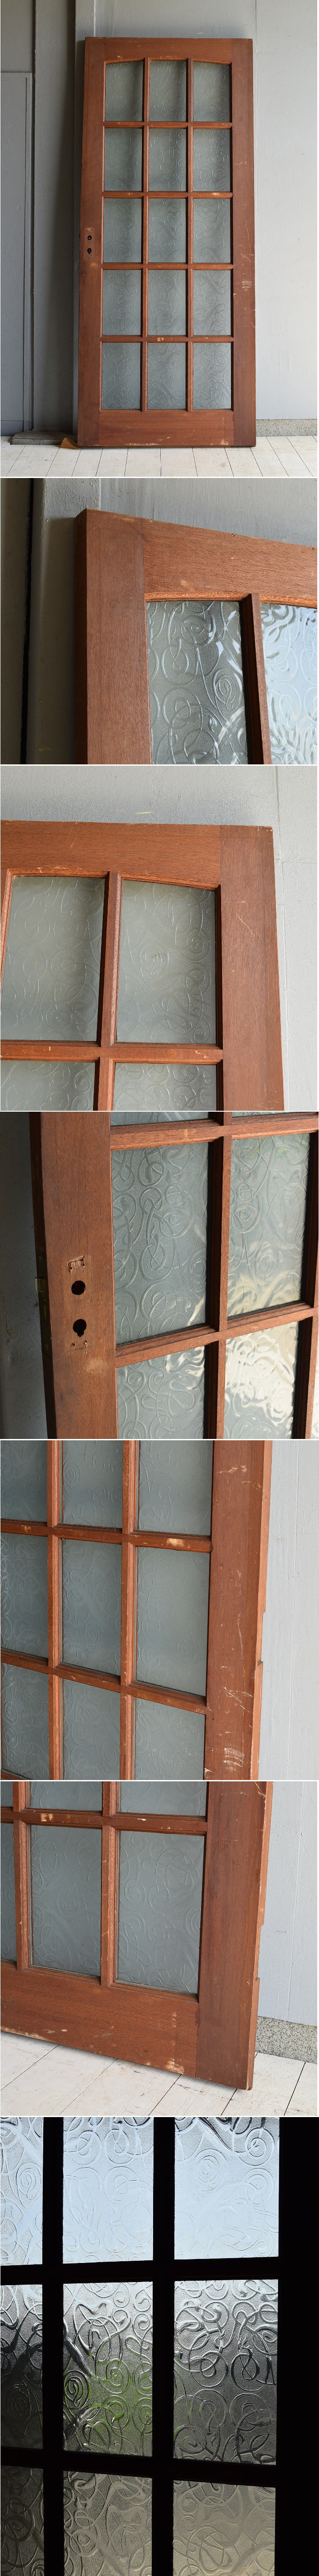 イギリス アンティーク ガラス入り木製ドア 扉 建具 7097